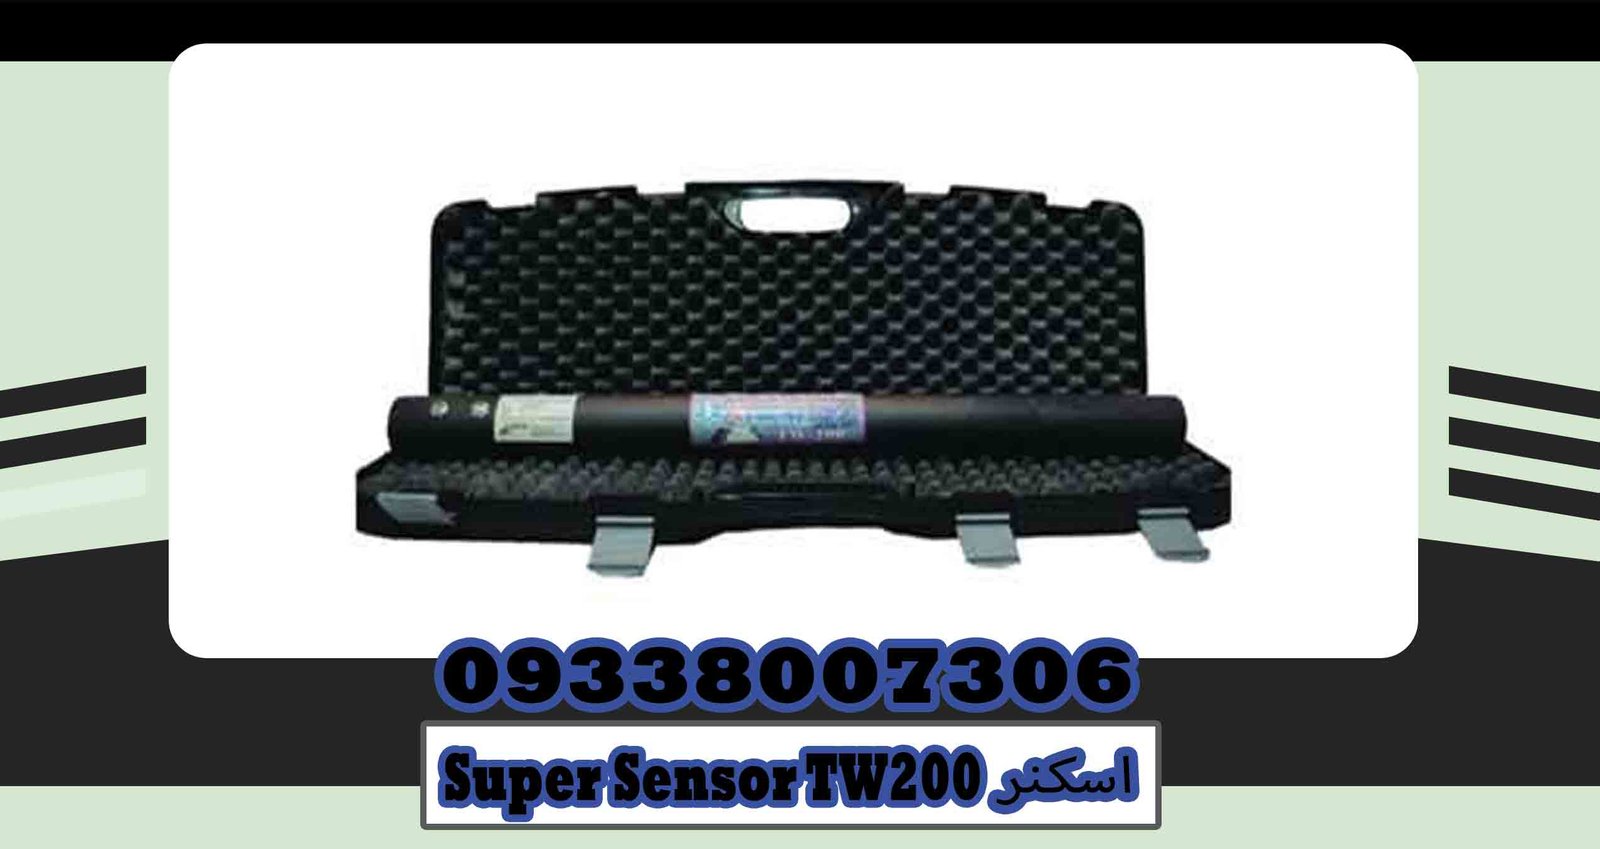 Super-Sensor-TW200